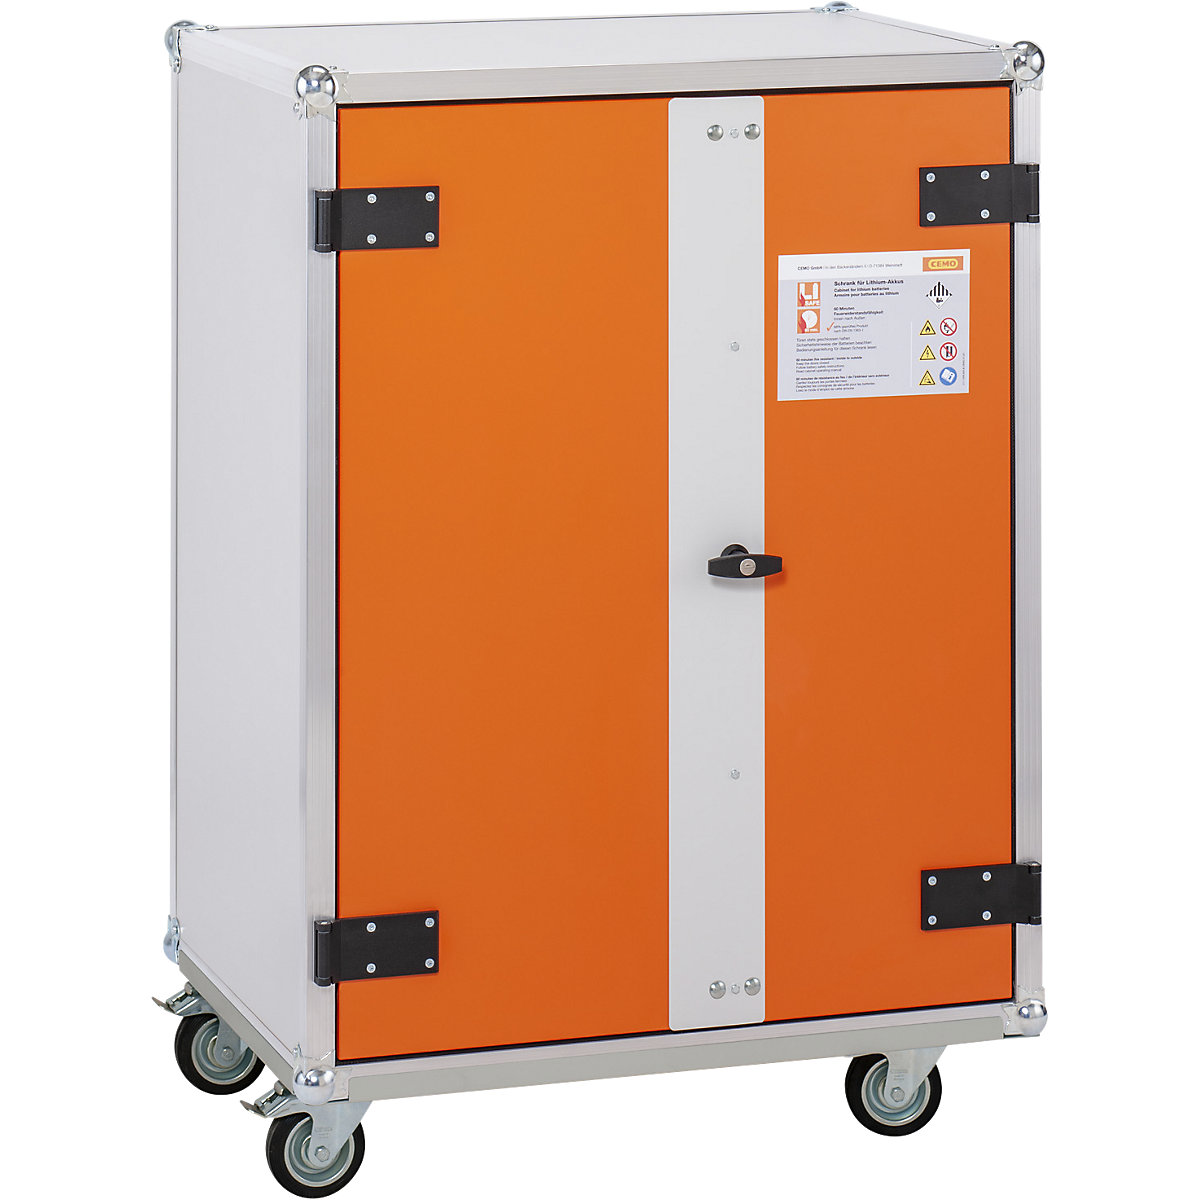 Veilige acculaadkast PREMIUM – CEMO, met wielen, hoogte 1150 mm, 400 V, oranje/grijs-1